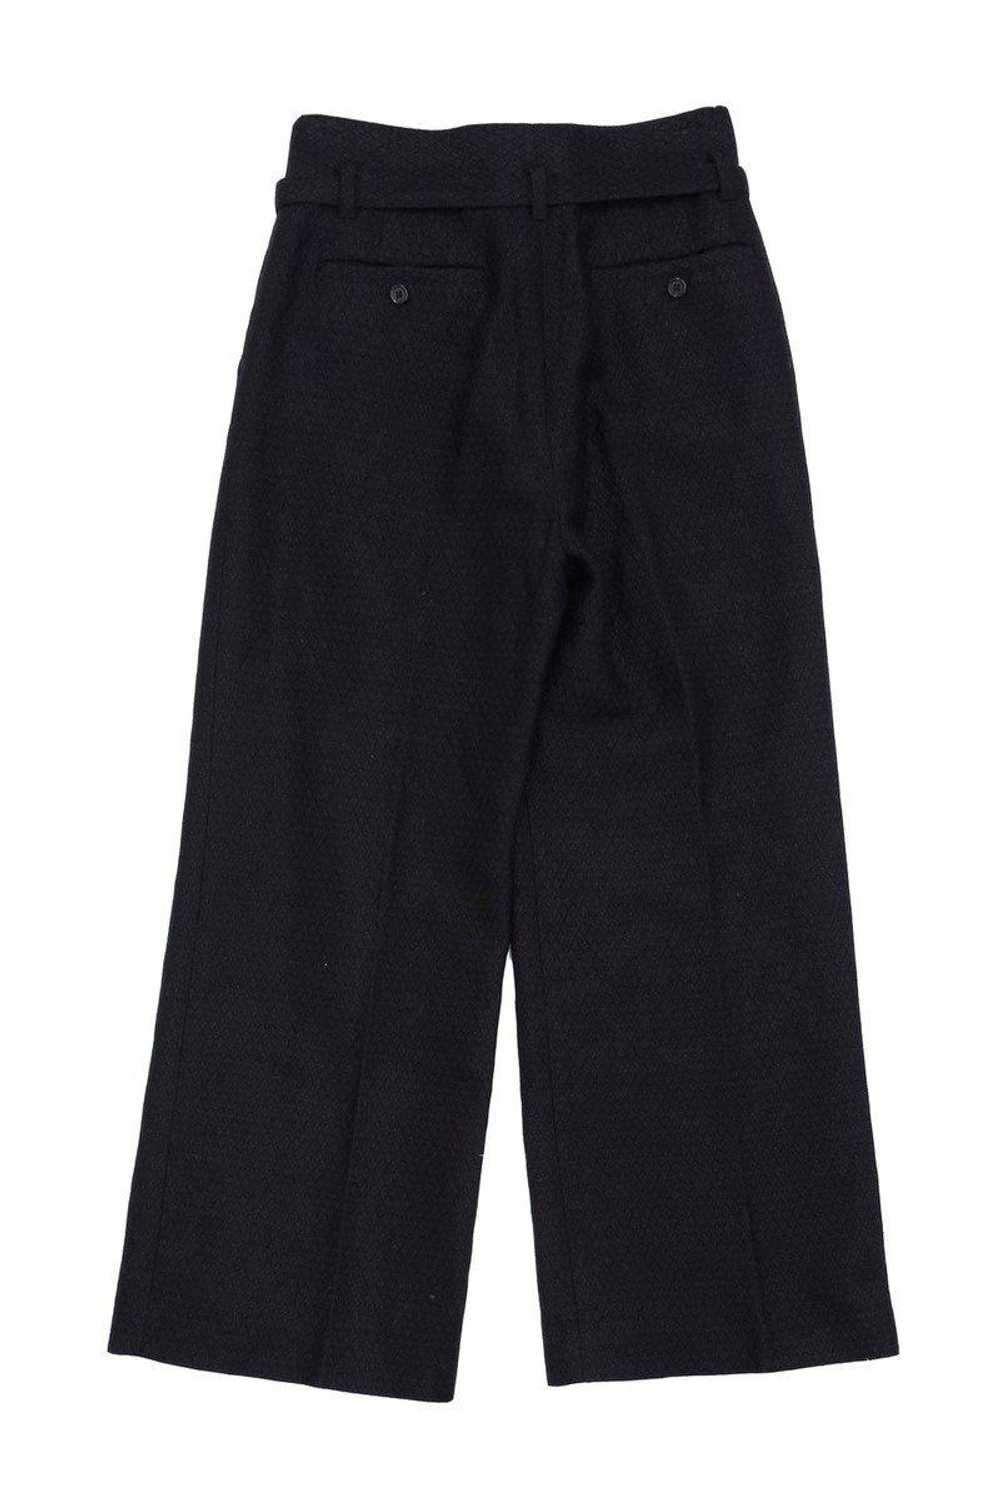 Marc Jacobs - Black Cotton Blend Trousers Sz 2 - image 1